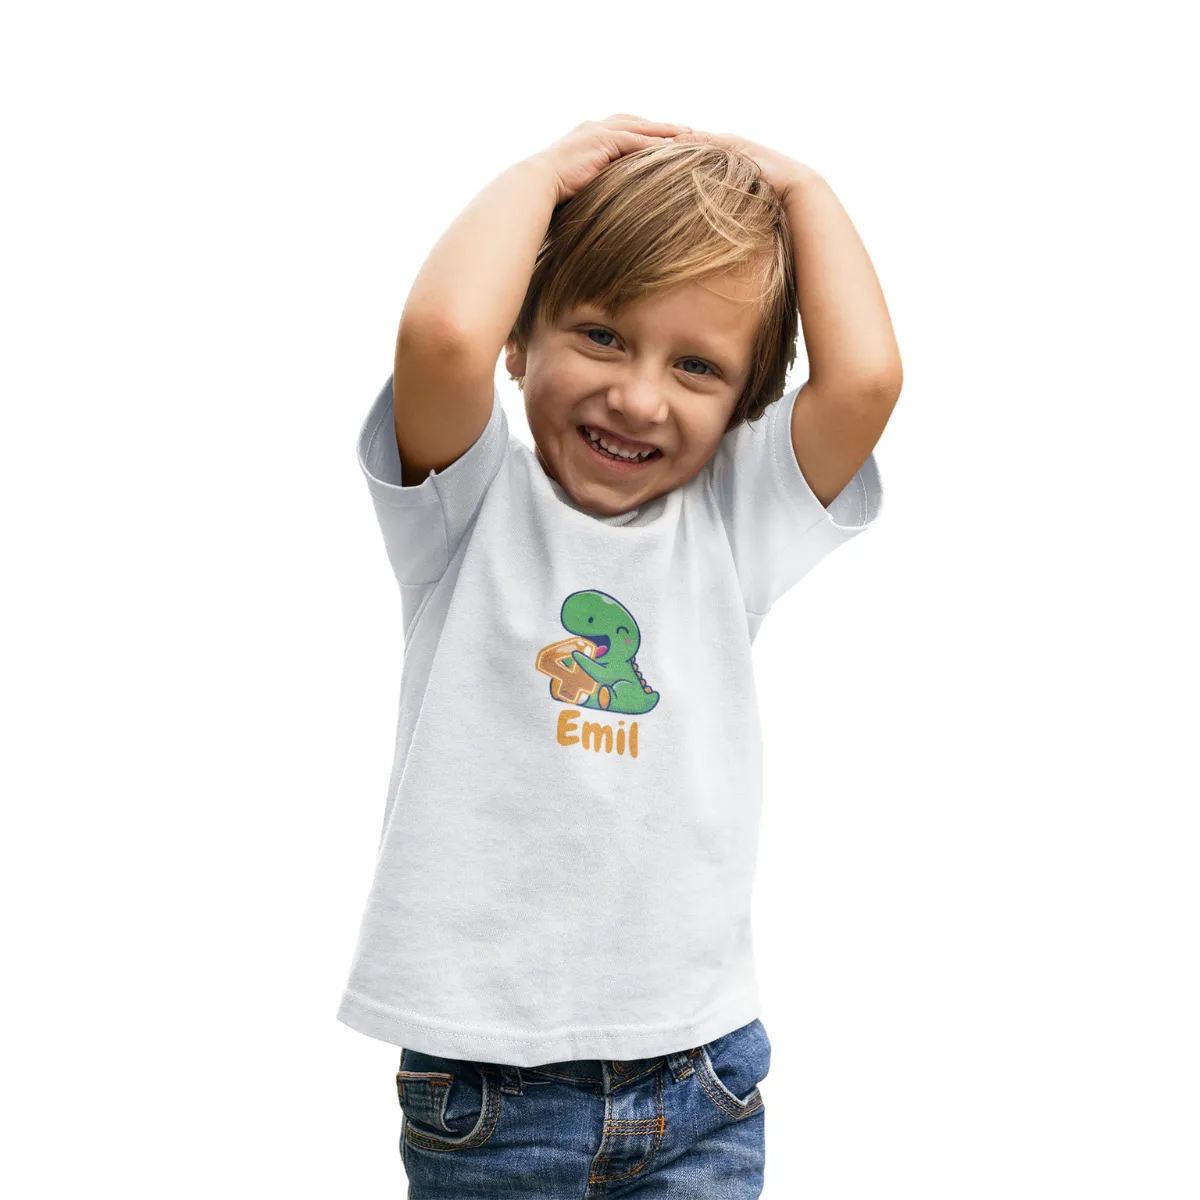 Kinder T-Shirt 4. Geburtstag mit Wunschname und Alter | Design Dino | Personalisiert | Kinder Geschenk Ich Bin jetzt 4 | Baumwolle - Fair Trade | Kurzarm | Weiß